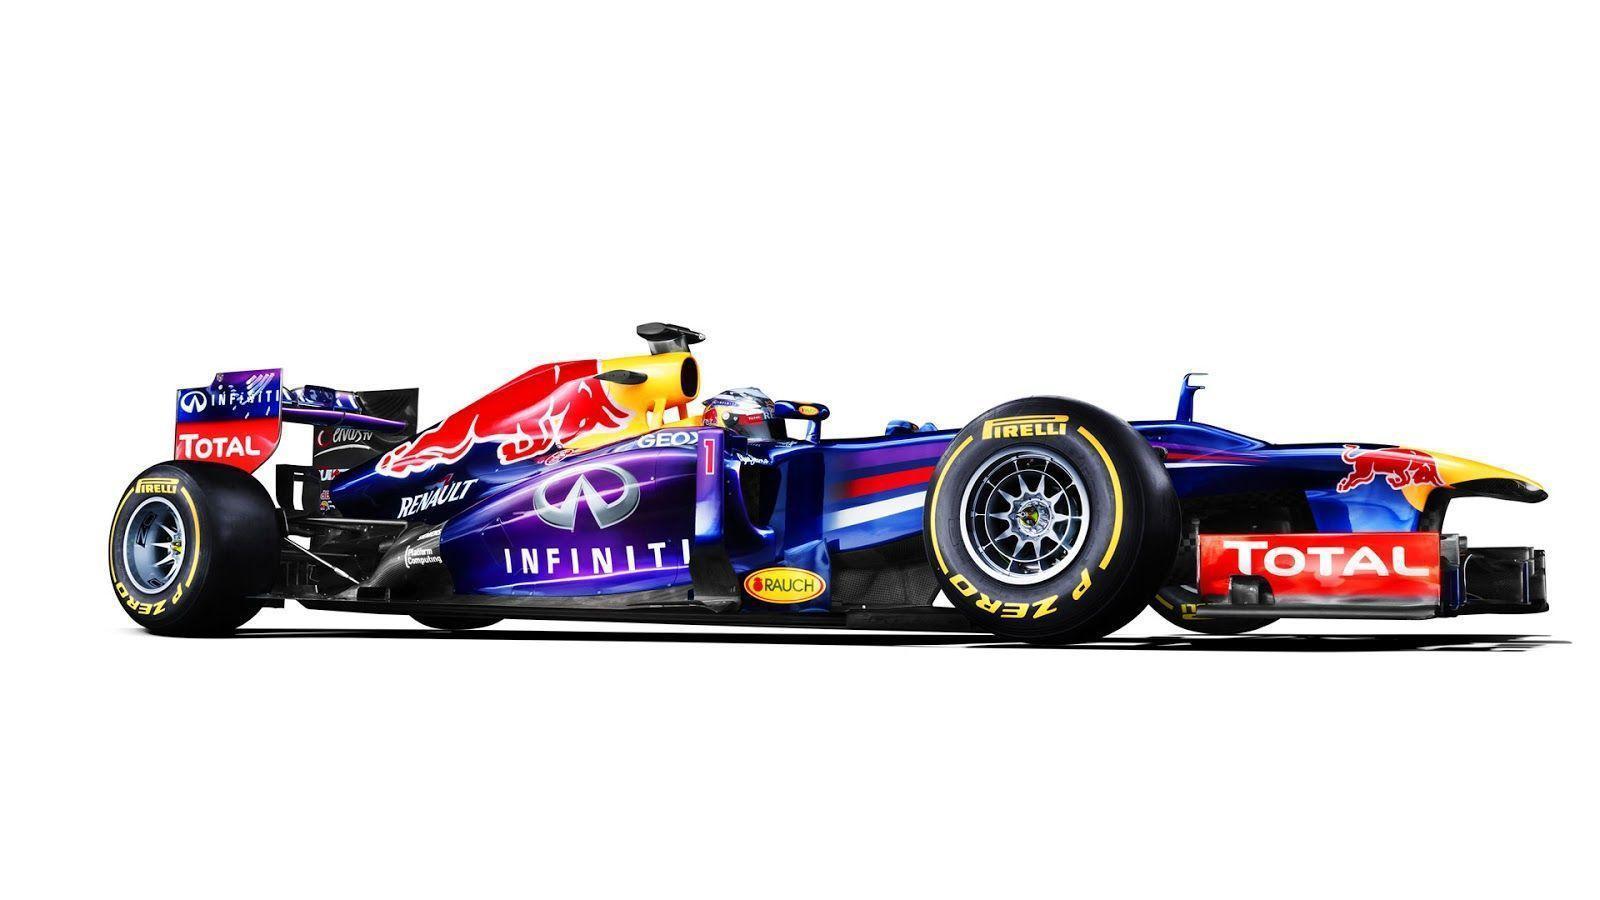 Red Bull RB9 2013 F1 Wallpaper